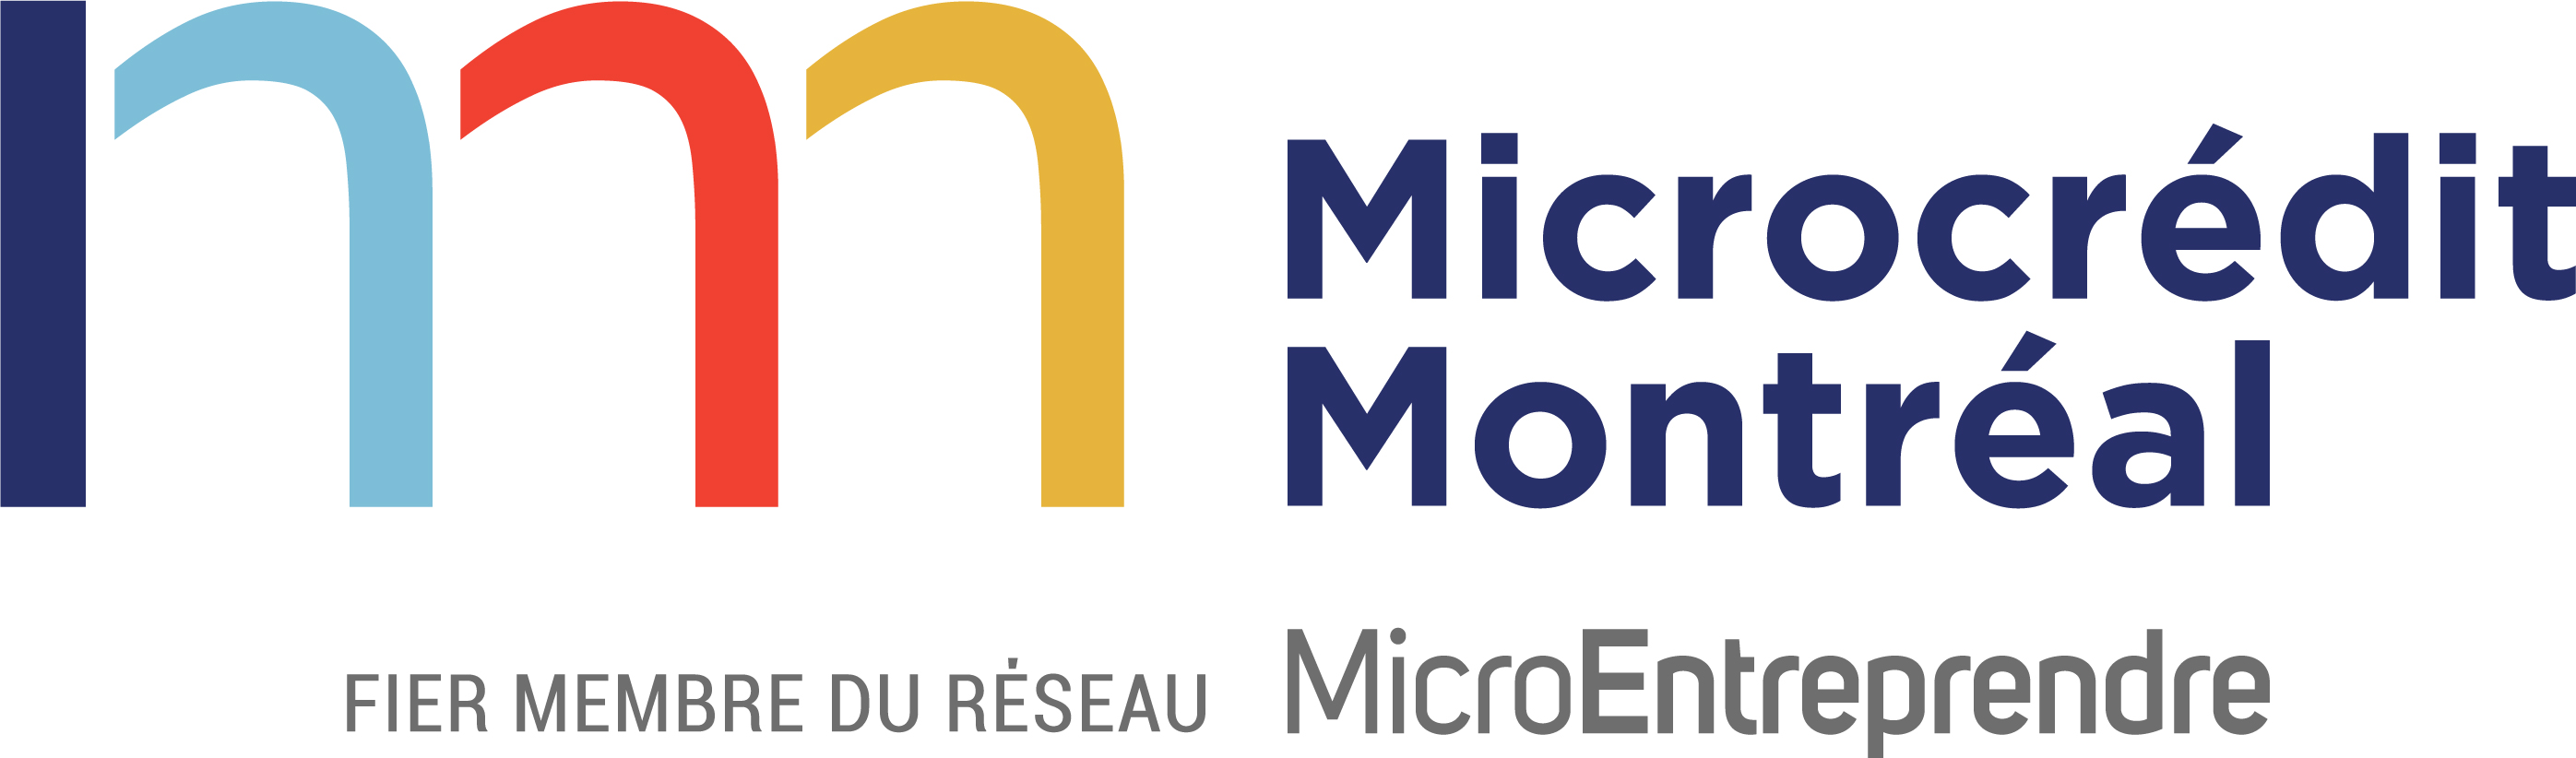 Microcredit Montréal logo